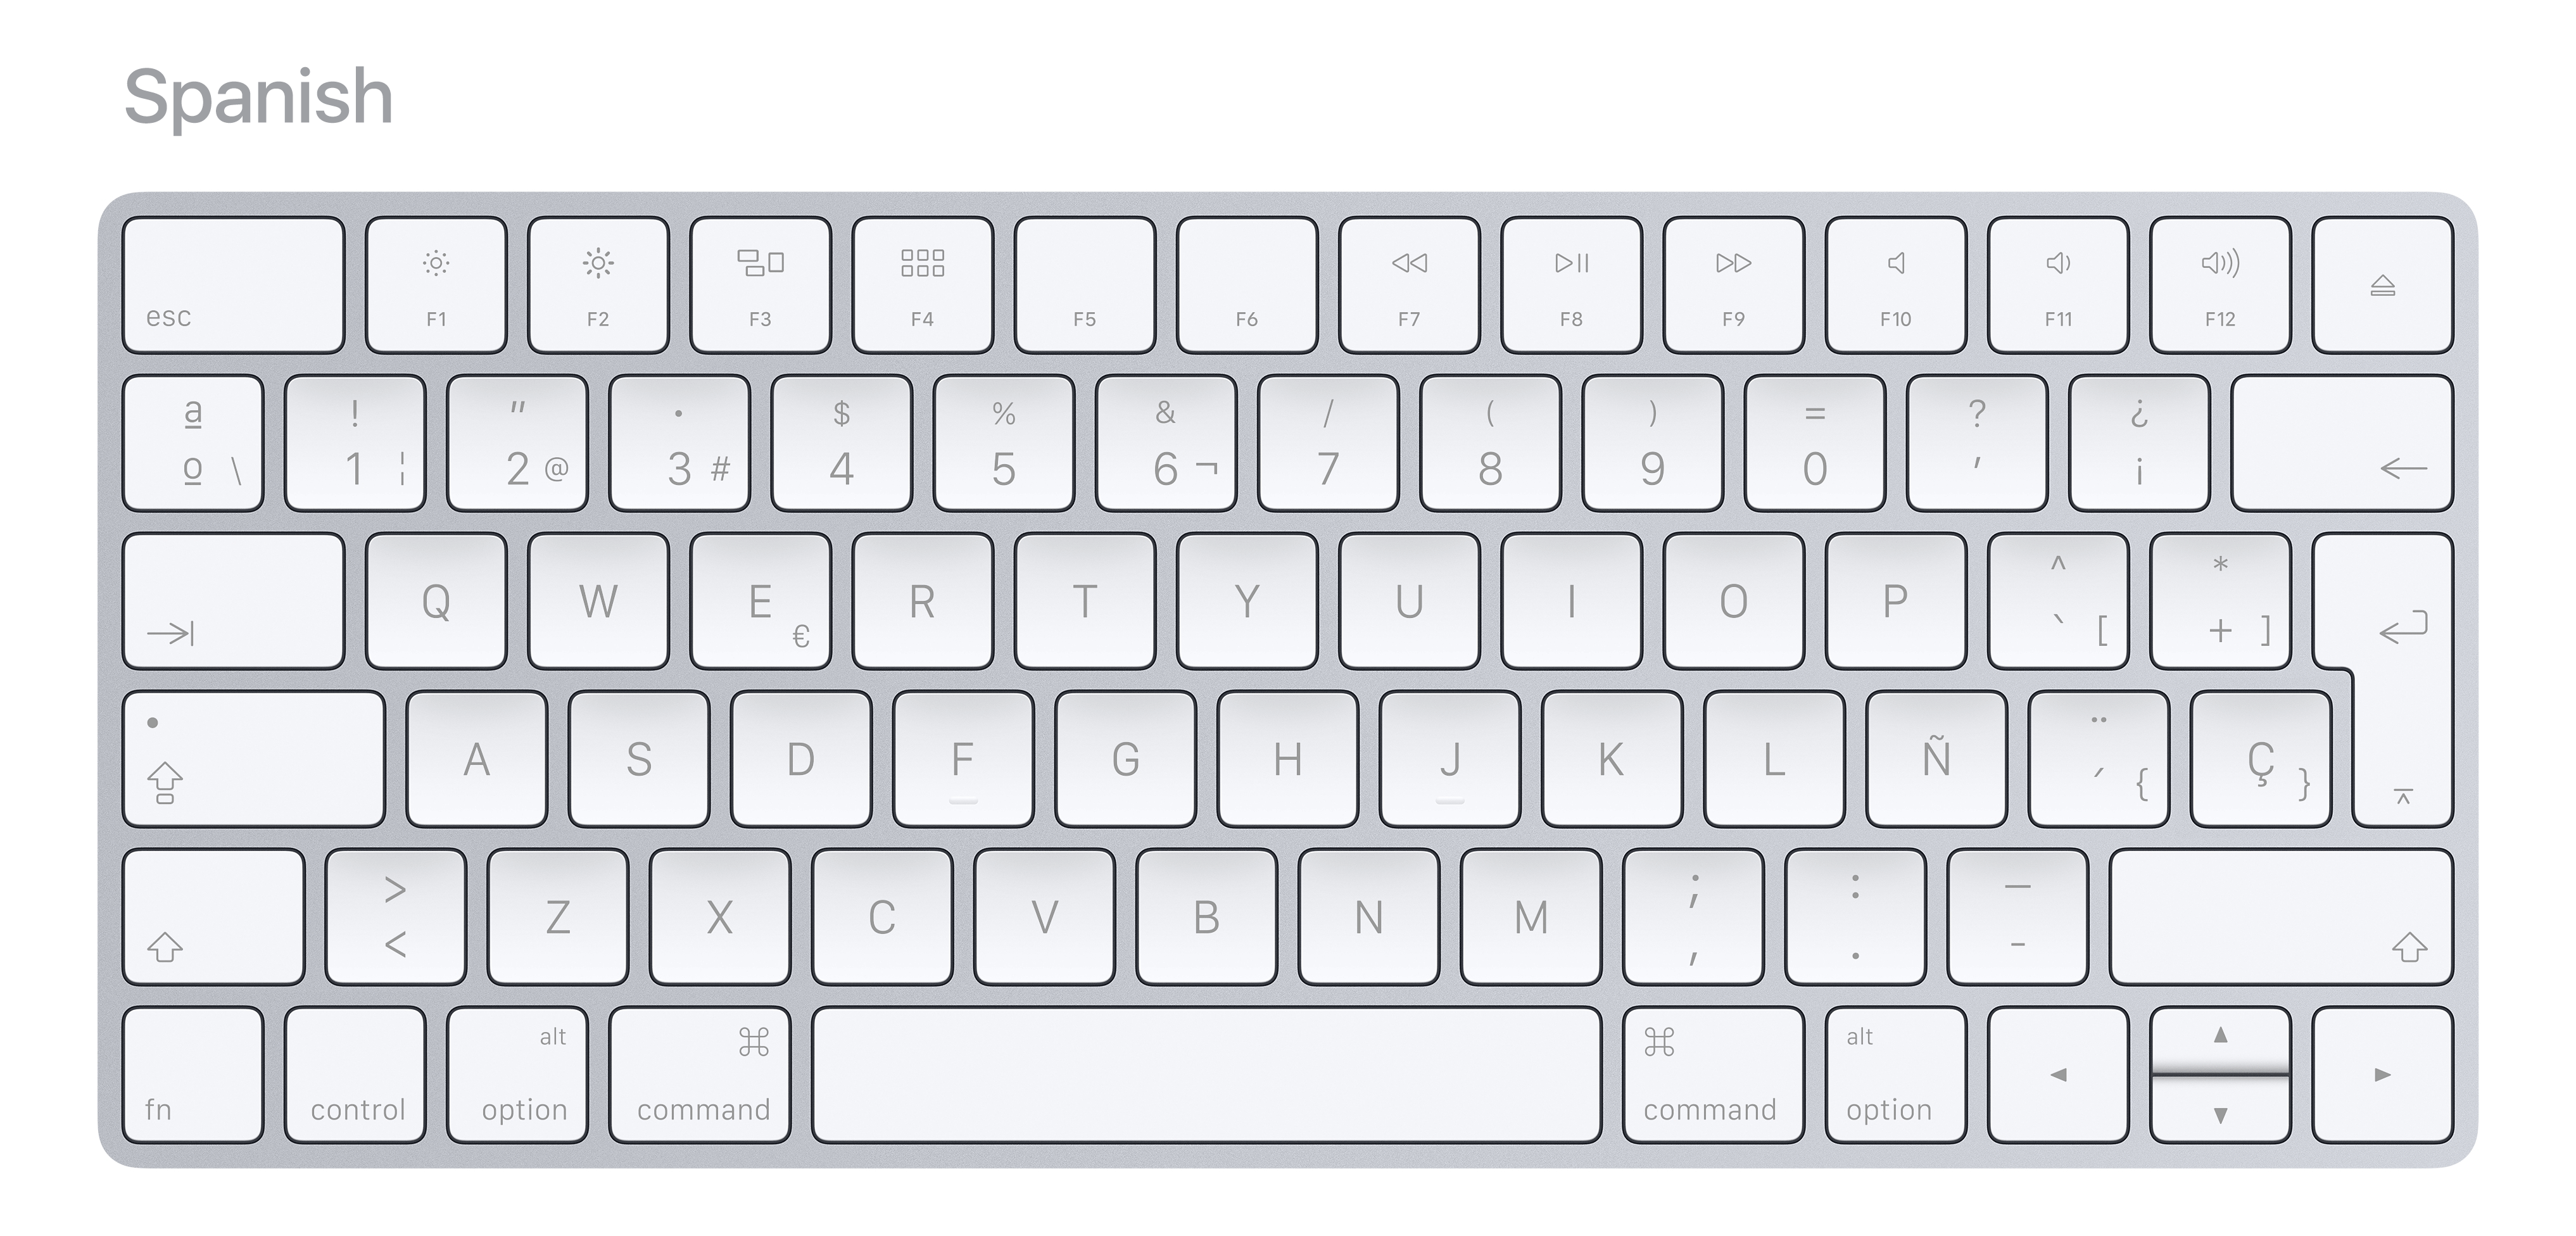 international-keyboard-layouts-in-2017-by-marcin-wichary-medium